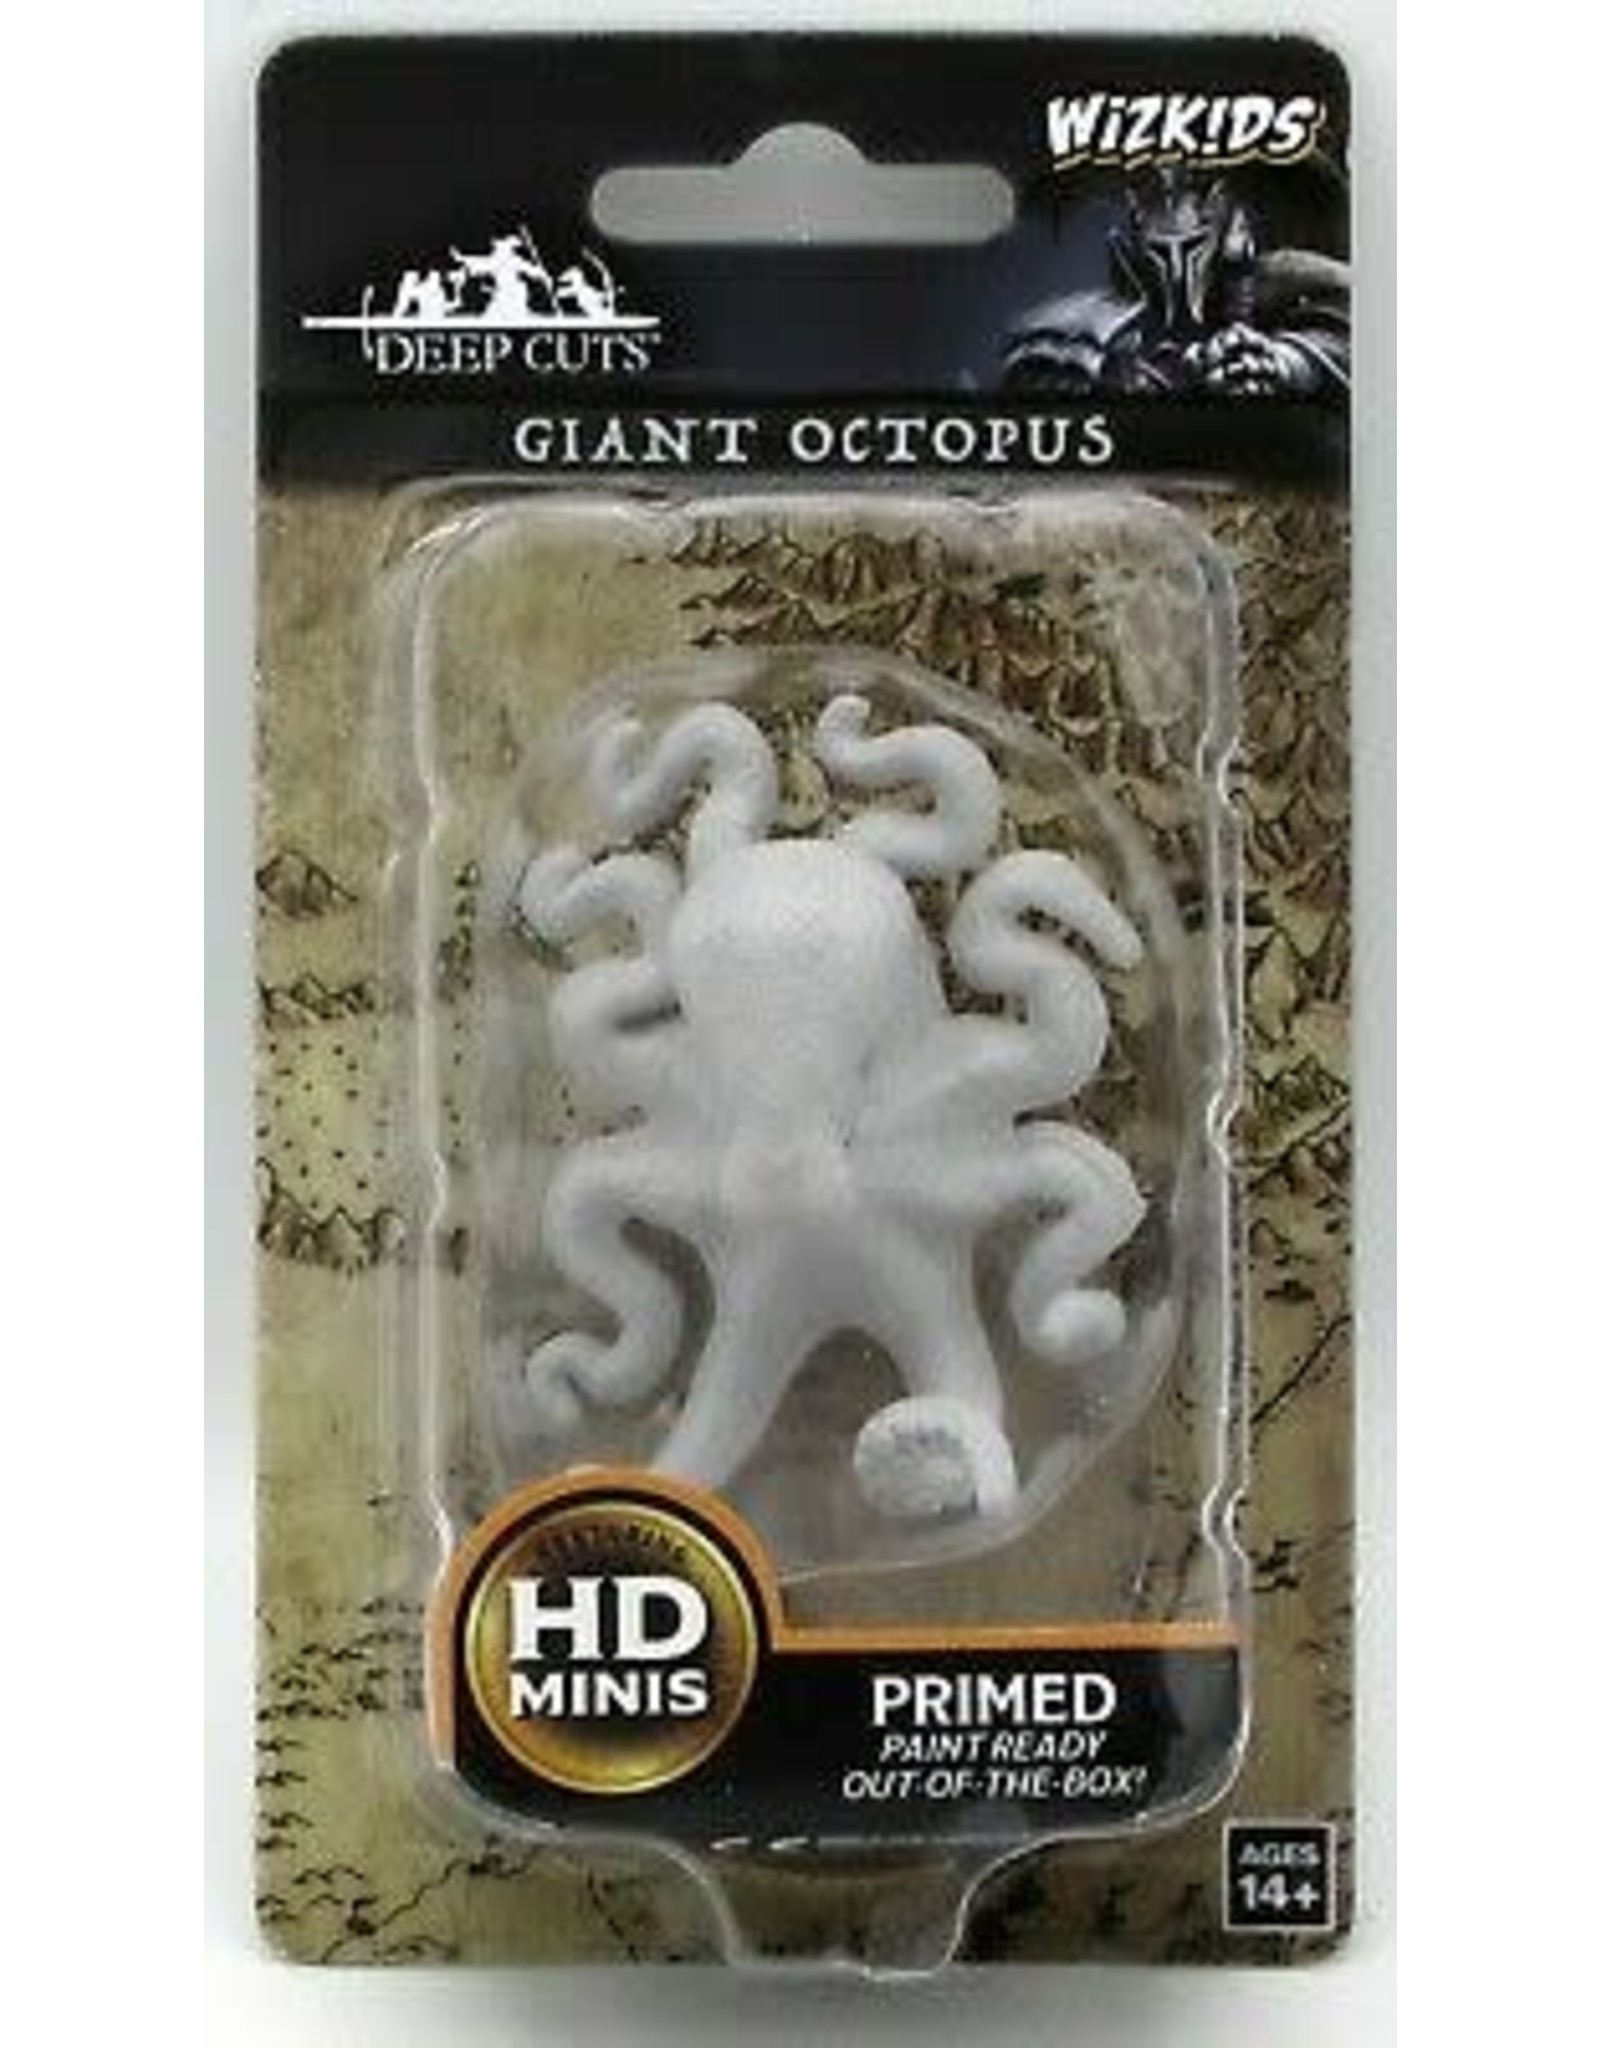 Giant Octopus D&D Wizkids Deep Cuts Miniatures 